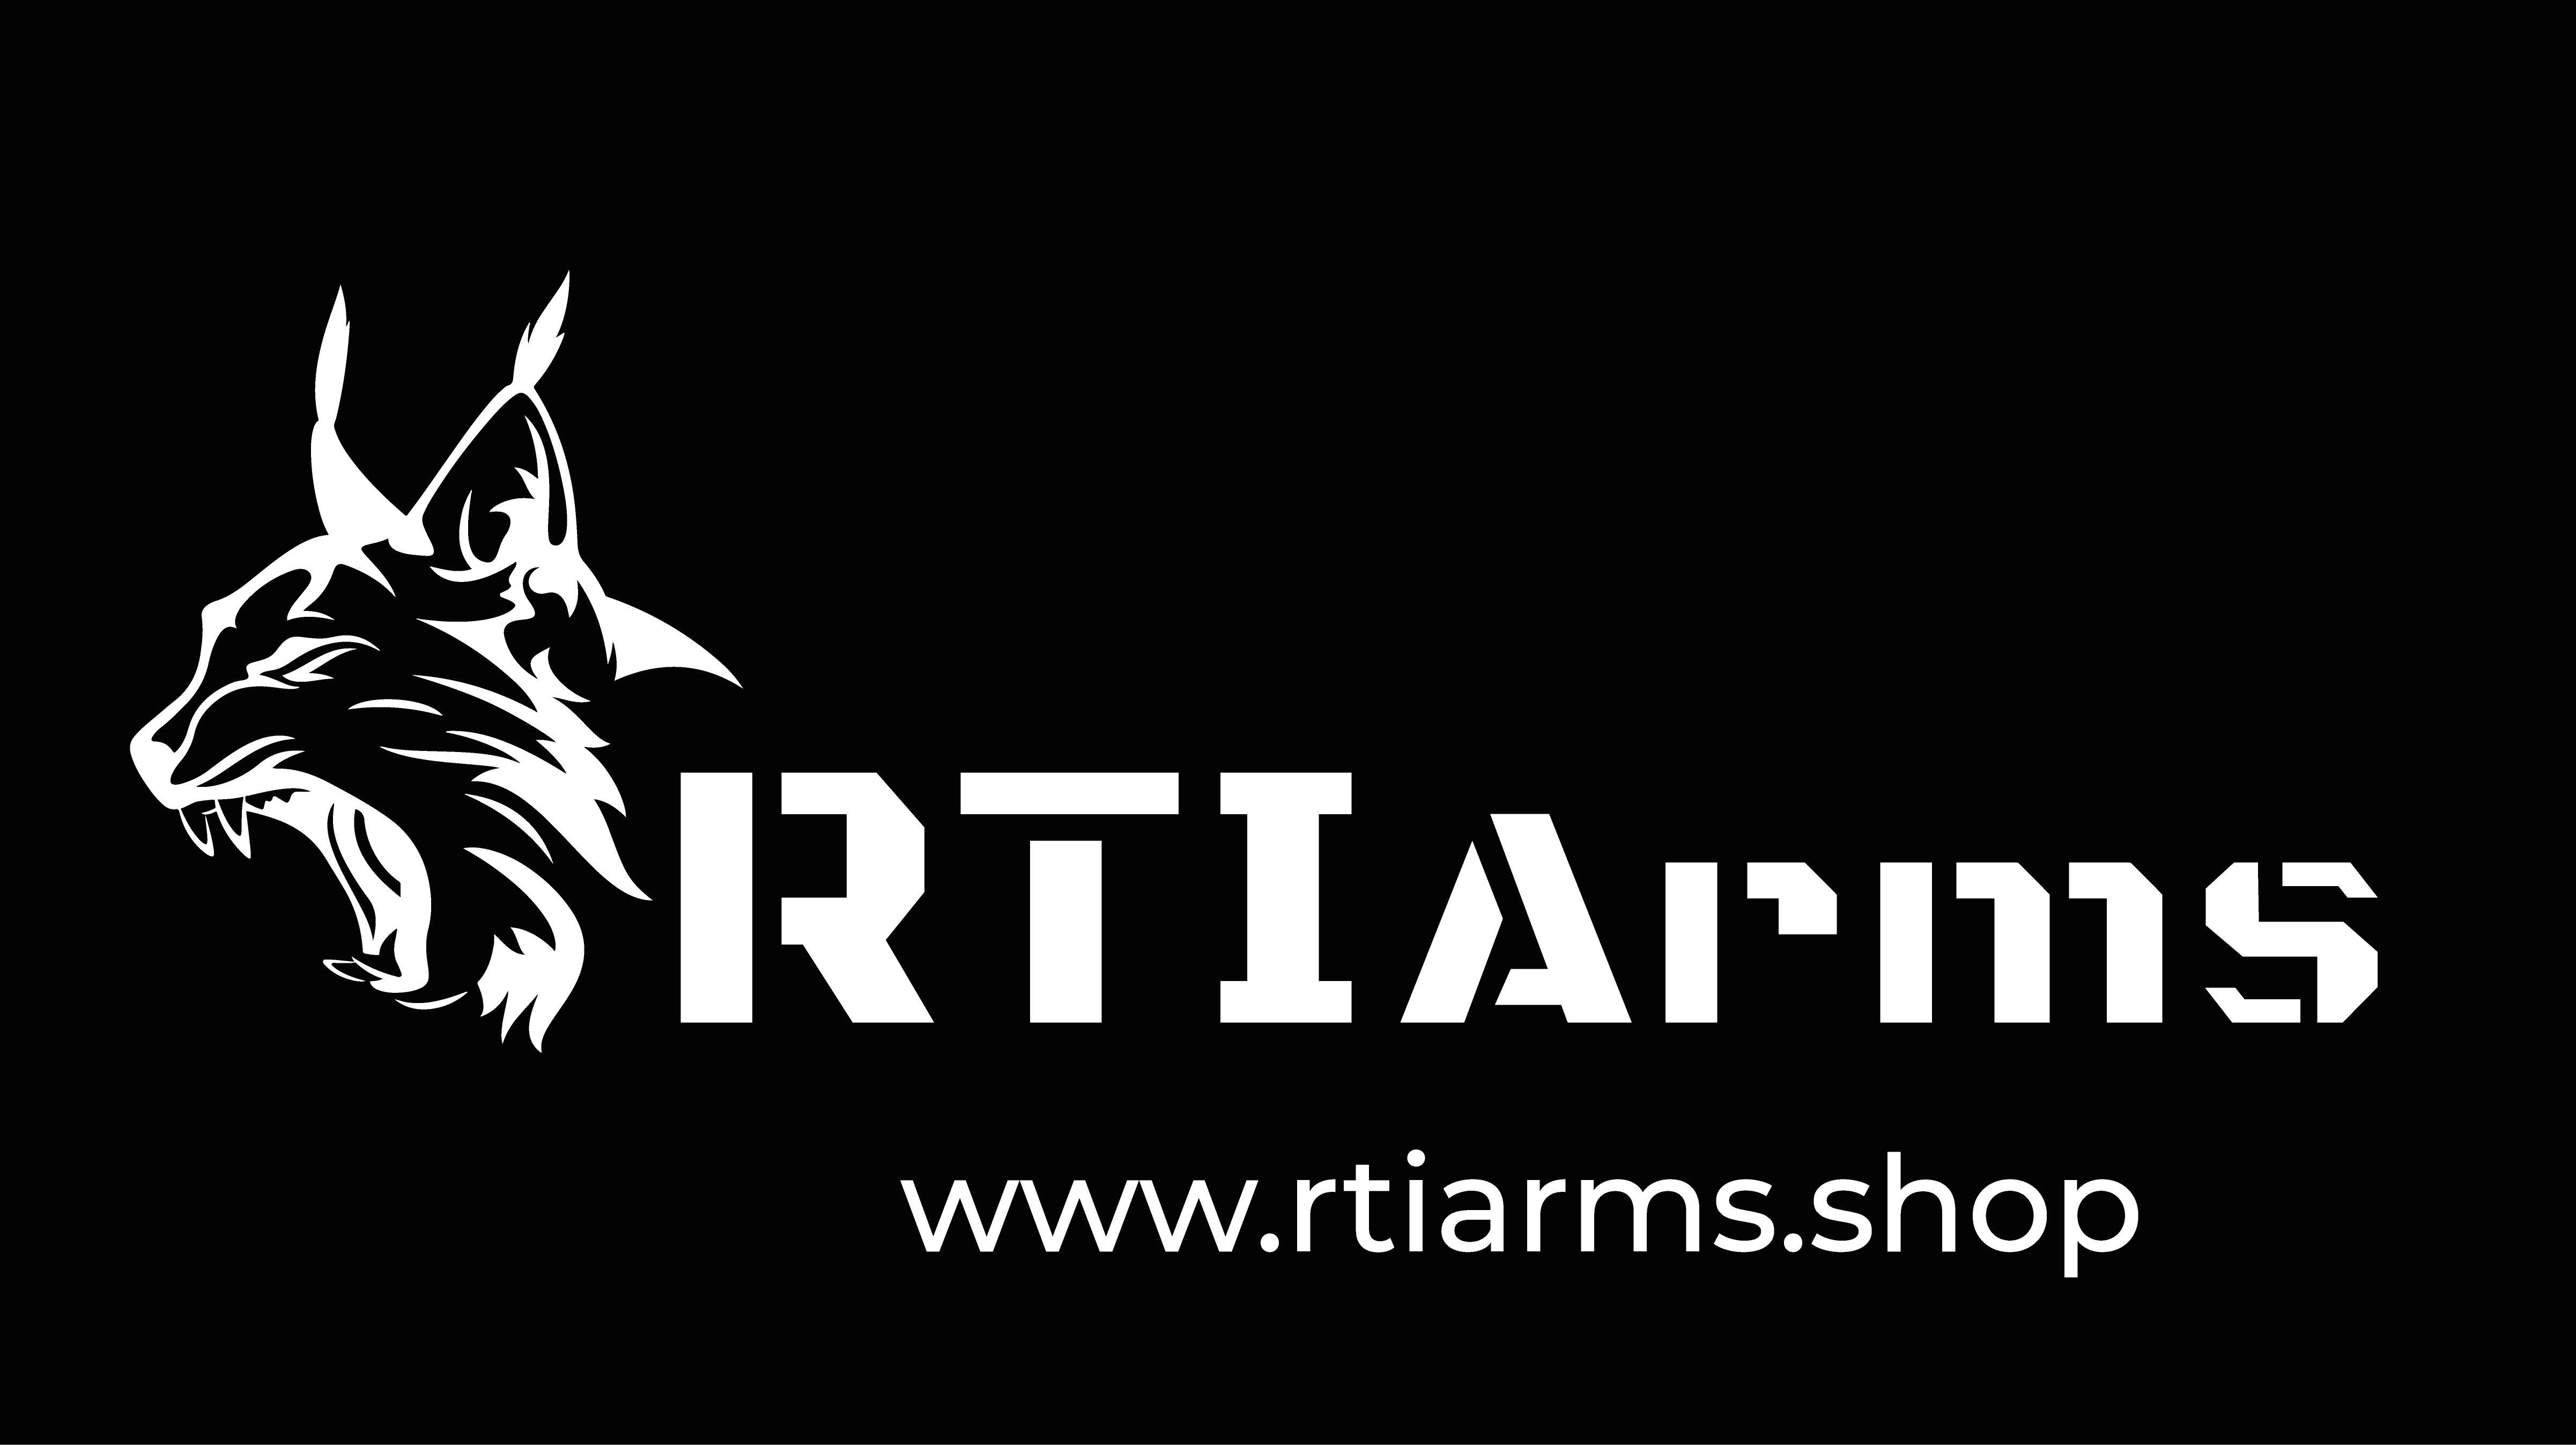 www.rtiarms.shop